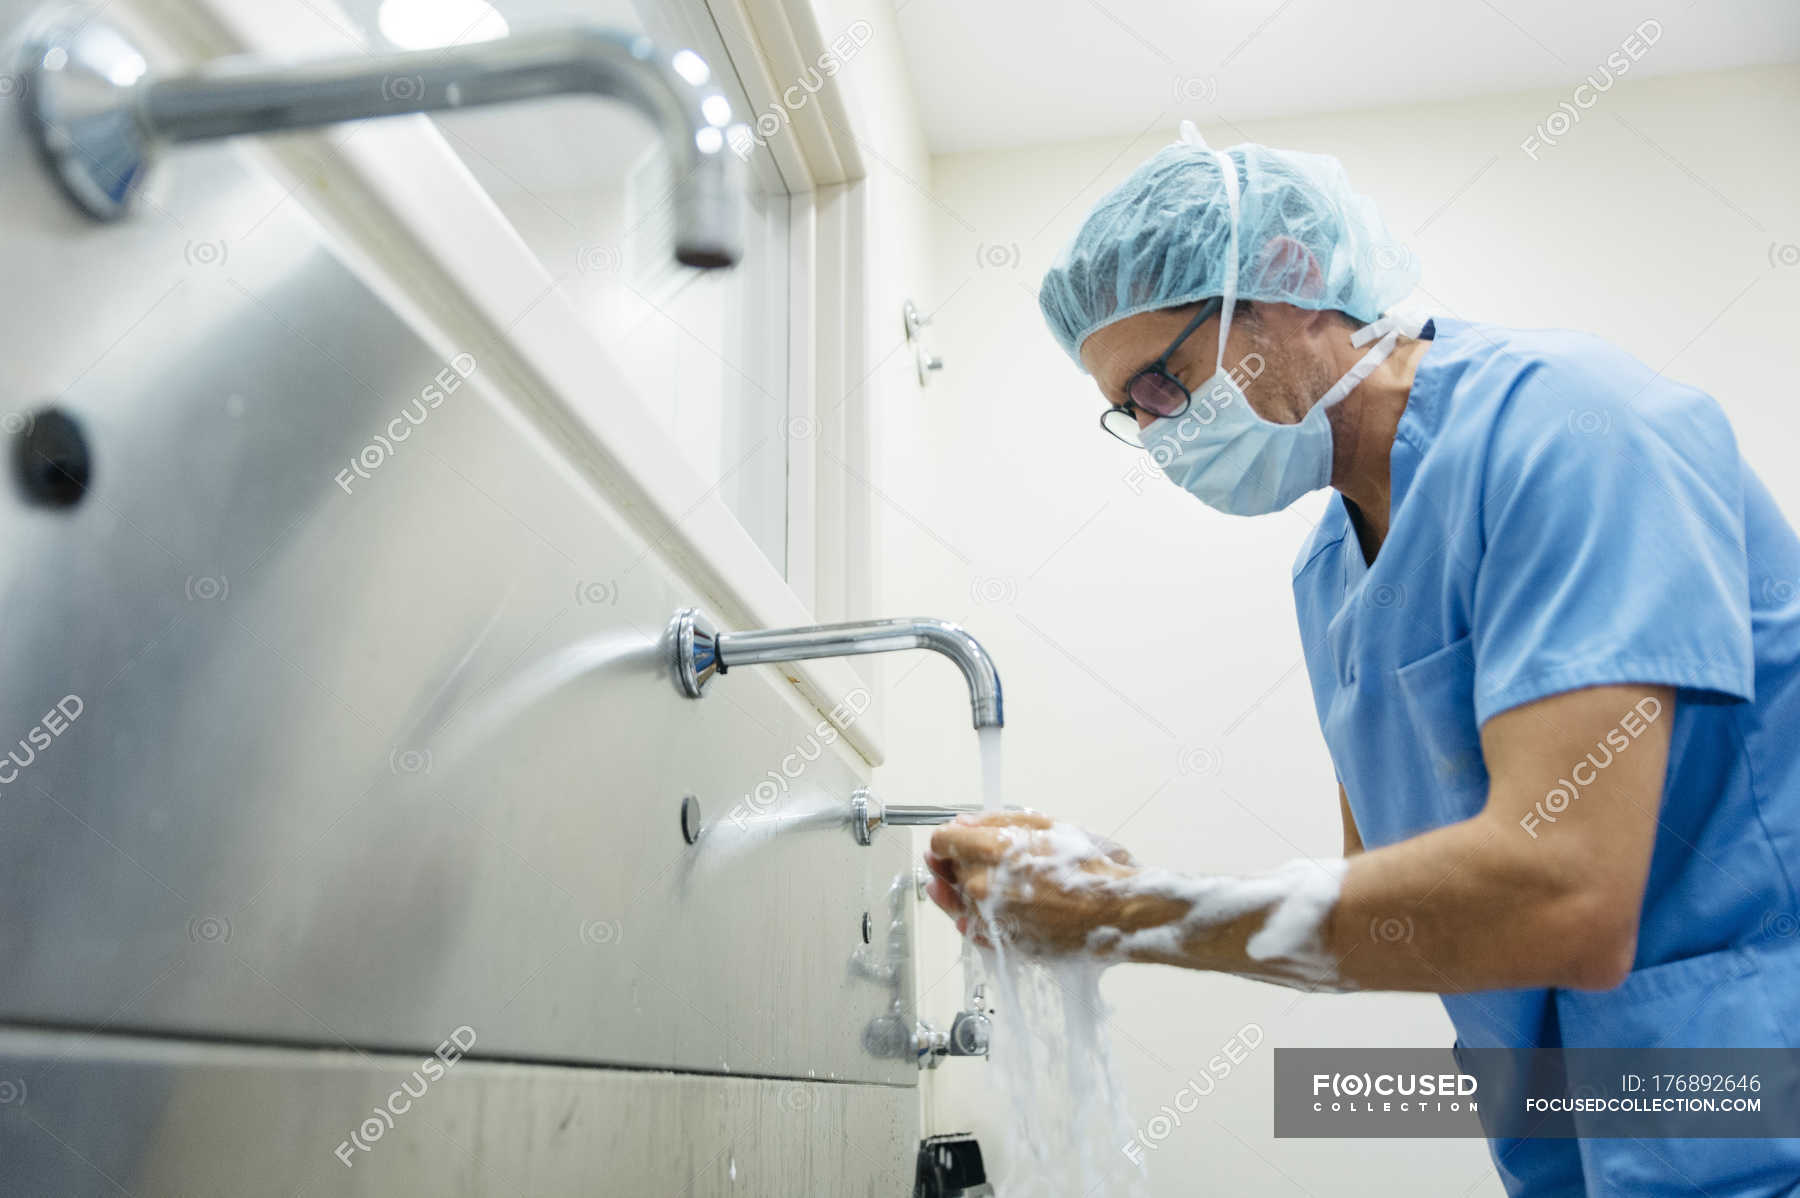 Очистка перед операцией. Мытье рук хирурга перед операцией. Подготовка рук хирурга к операции. Хирургическая мойка рук. Хирург обрабатывает руки.